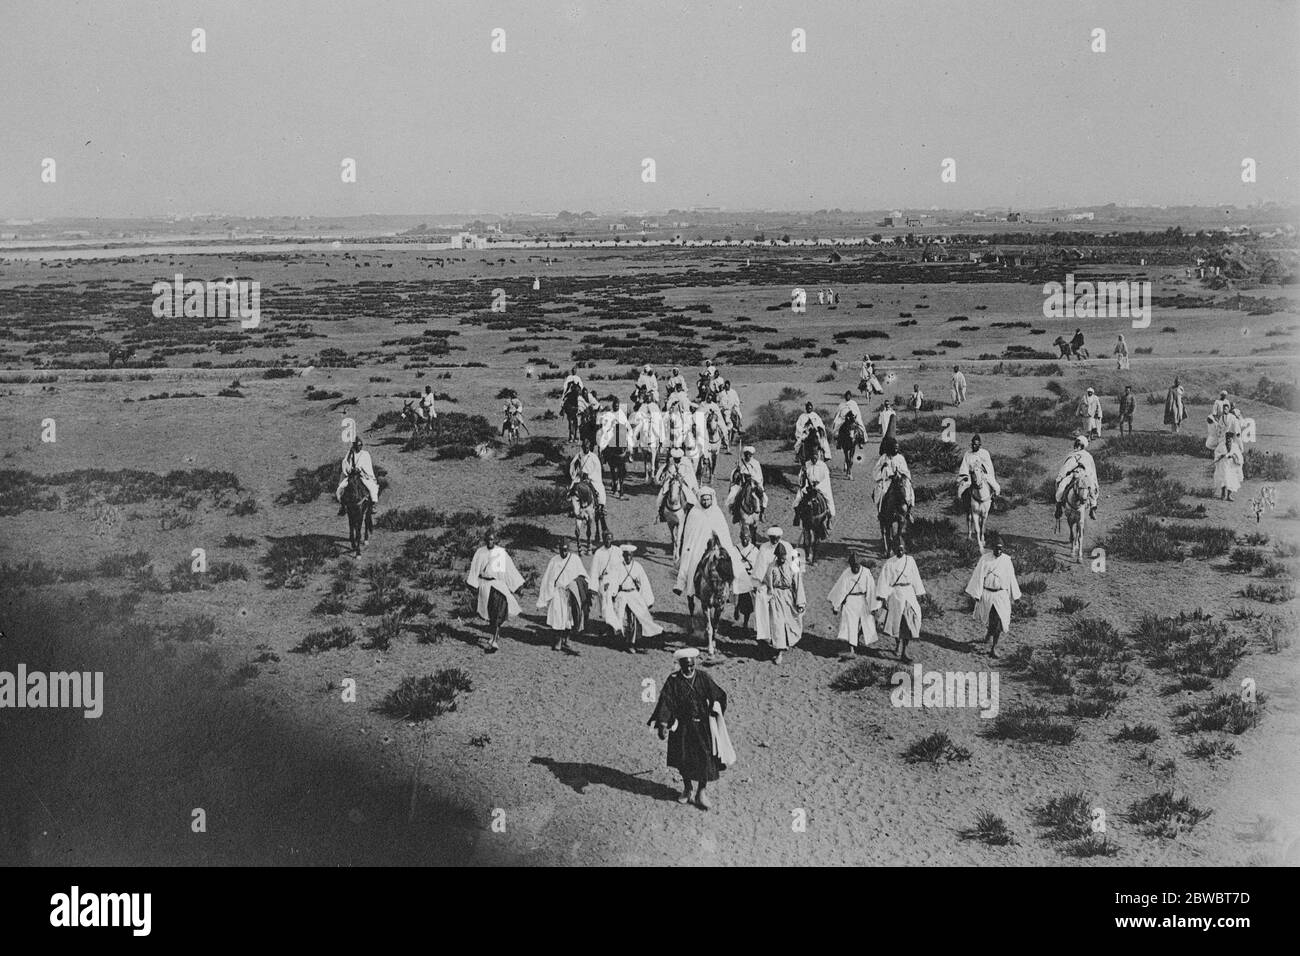 Auf seinem Weg in der Wüste zu beten, photogaphierte der Sultan von Marokko an einem Freitag, ein paar Meilen außerhalb der Mauer von Rabat 14 Oktober 1924 Stockfoto